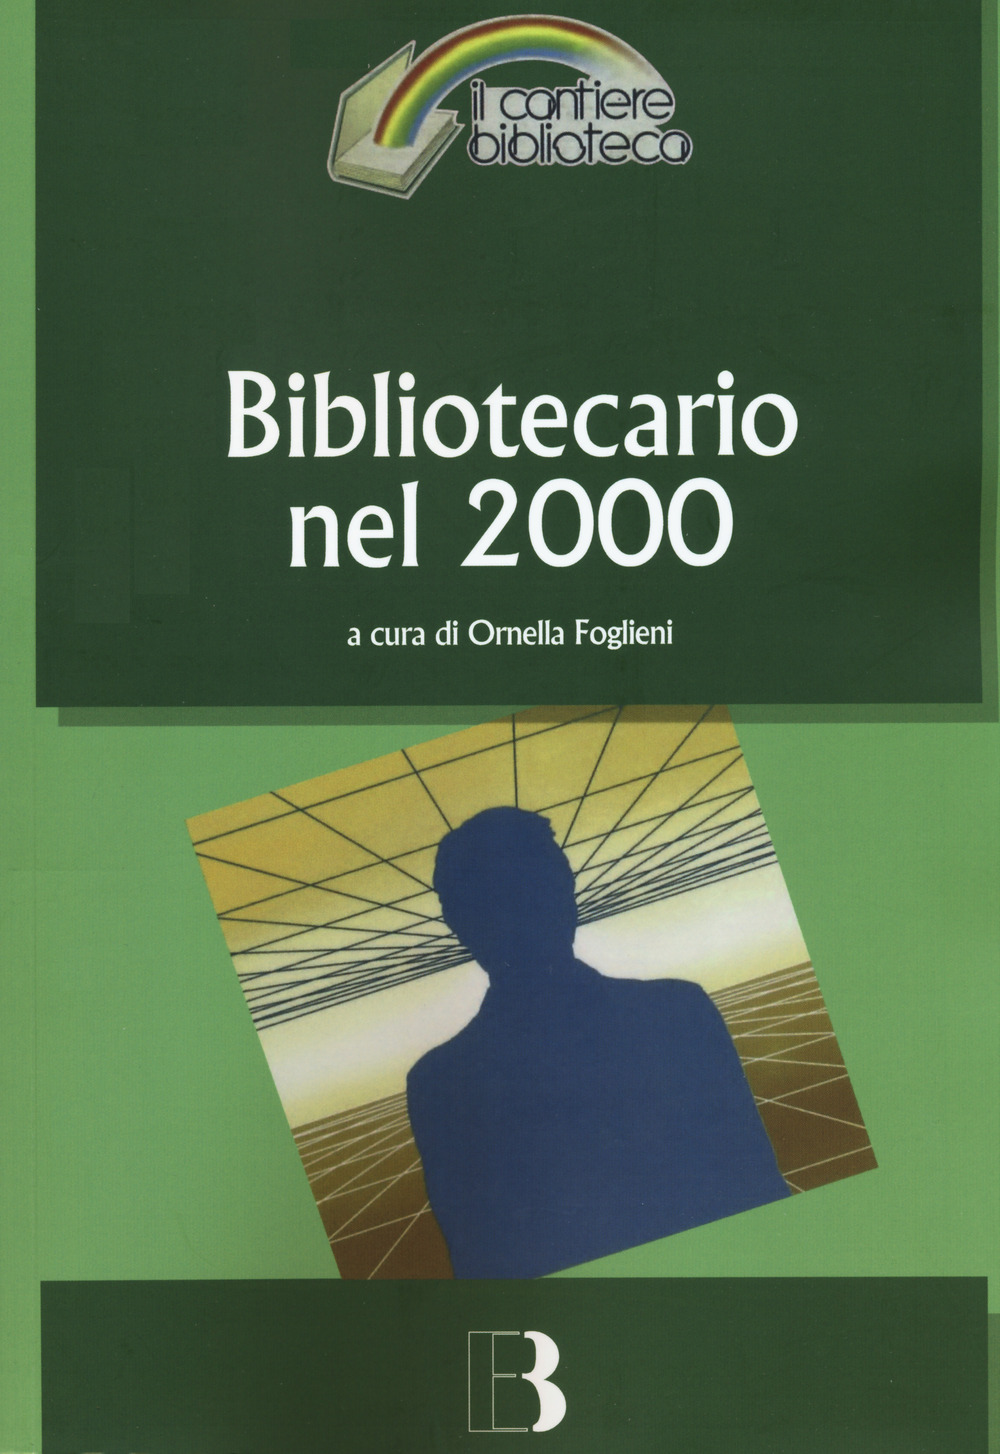 Bibliotecario nel 2000. Come cambia la professione nell'era digitale